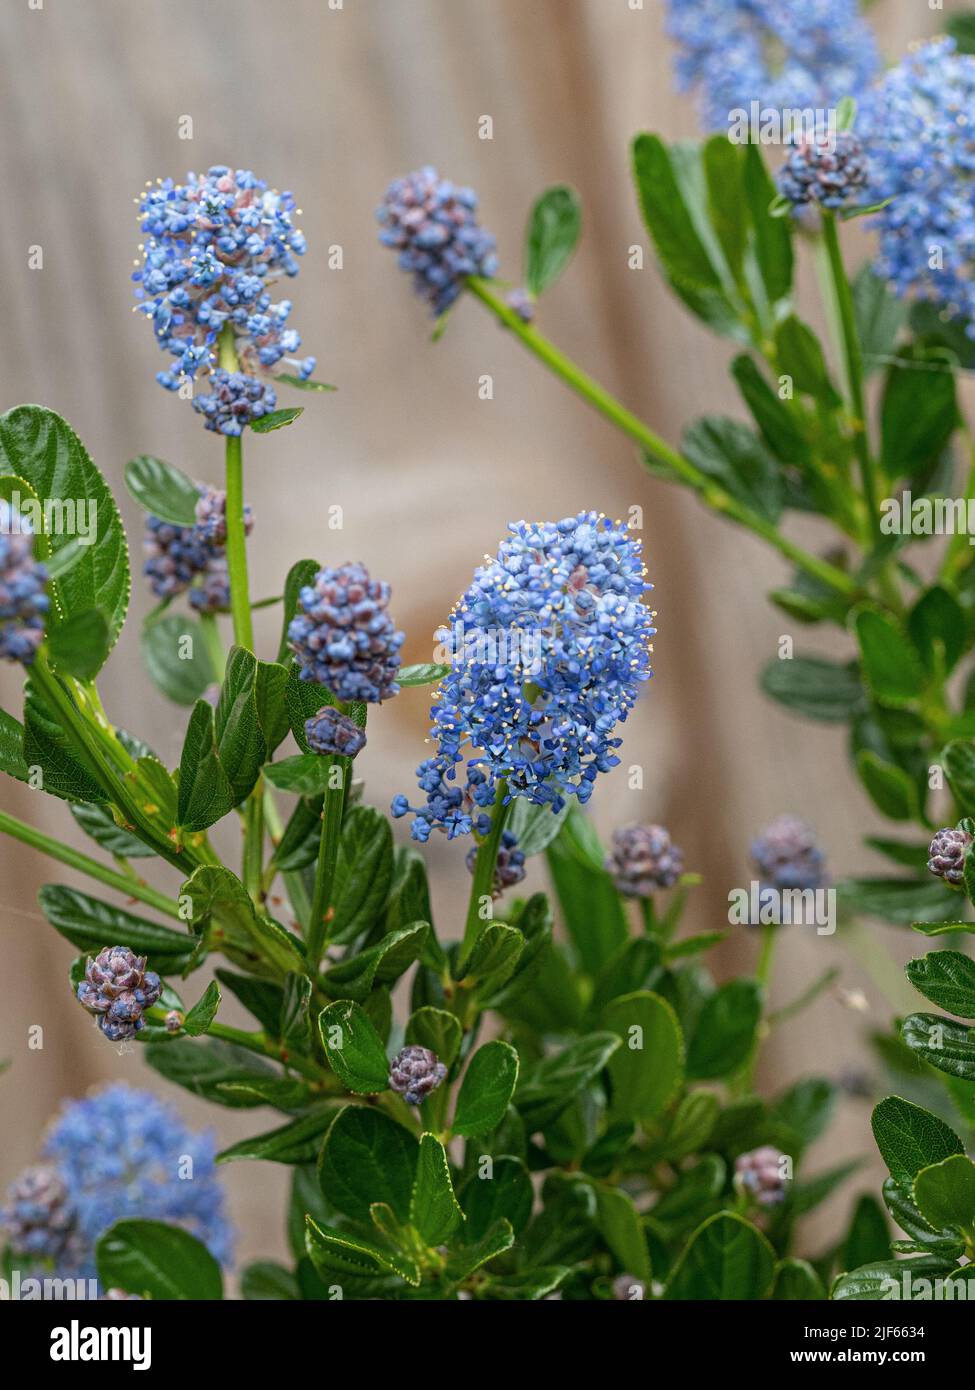 Un primer plano de un pico de flores azul cielo de Ceanothus impressus 'Victoria' Foto de stock